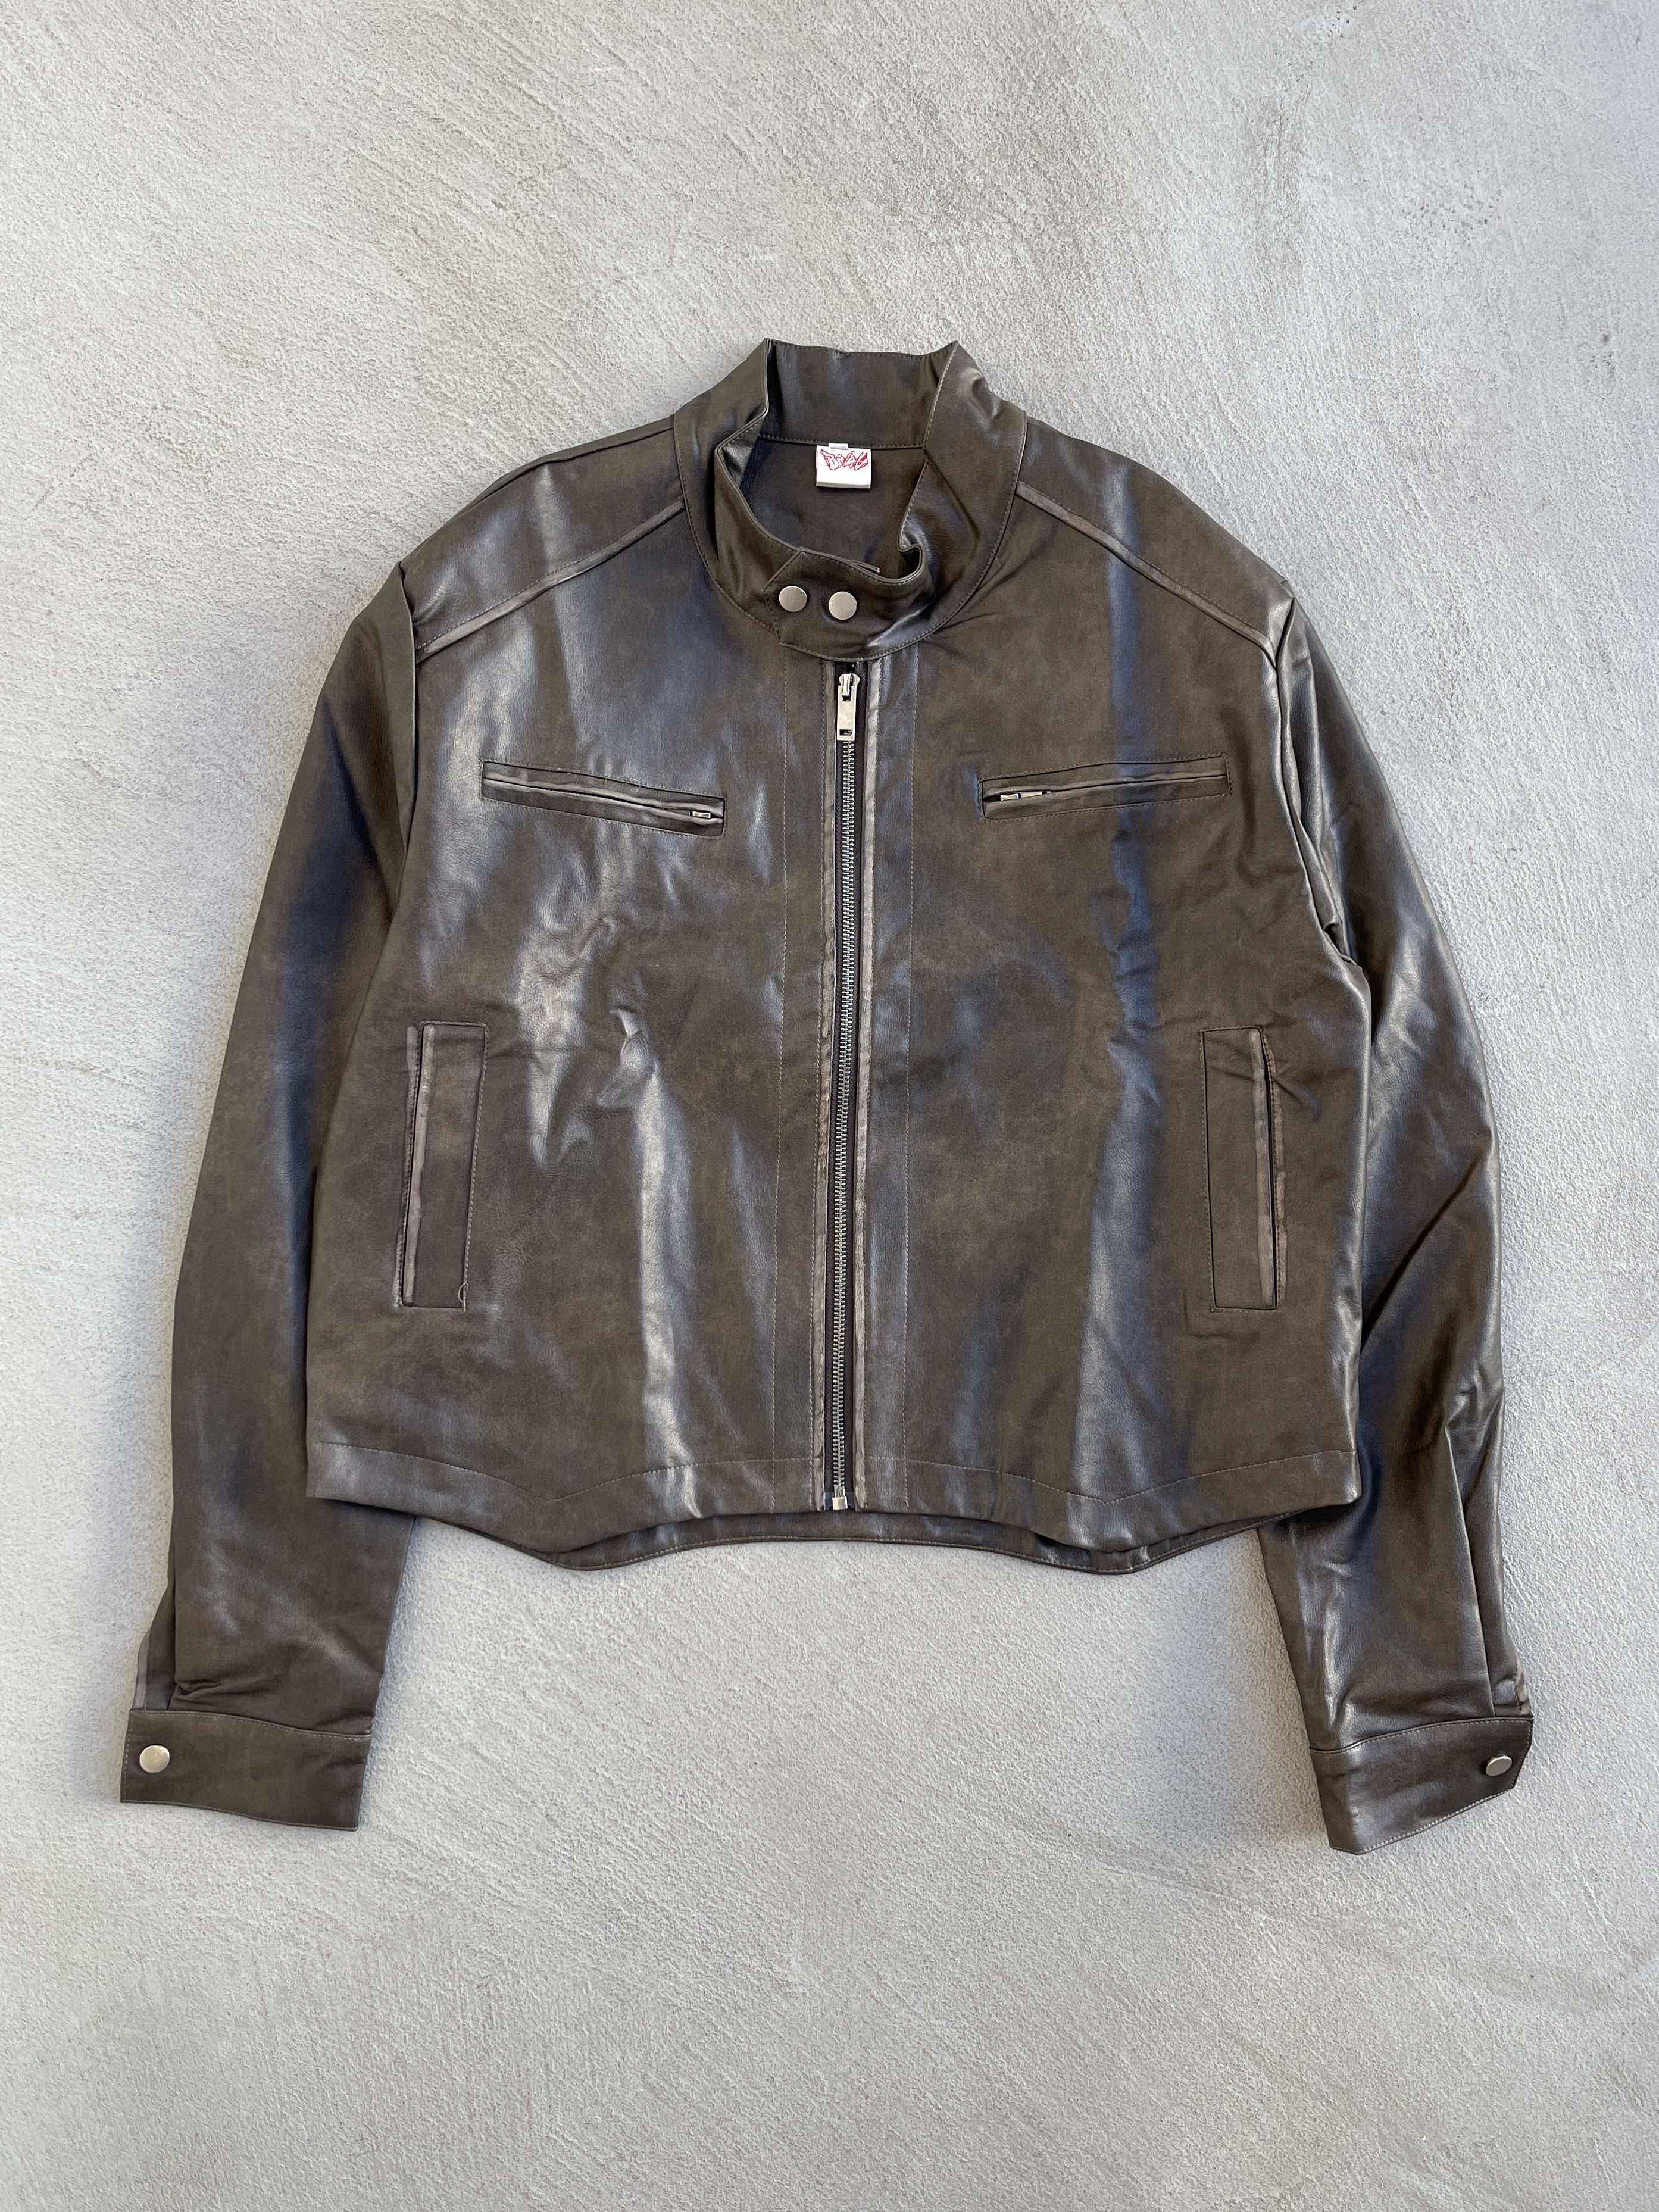 STEAL! Vintage 1990s Biker Leather Jacket - 1